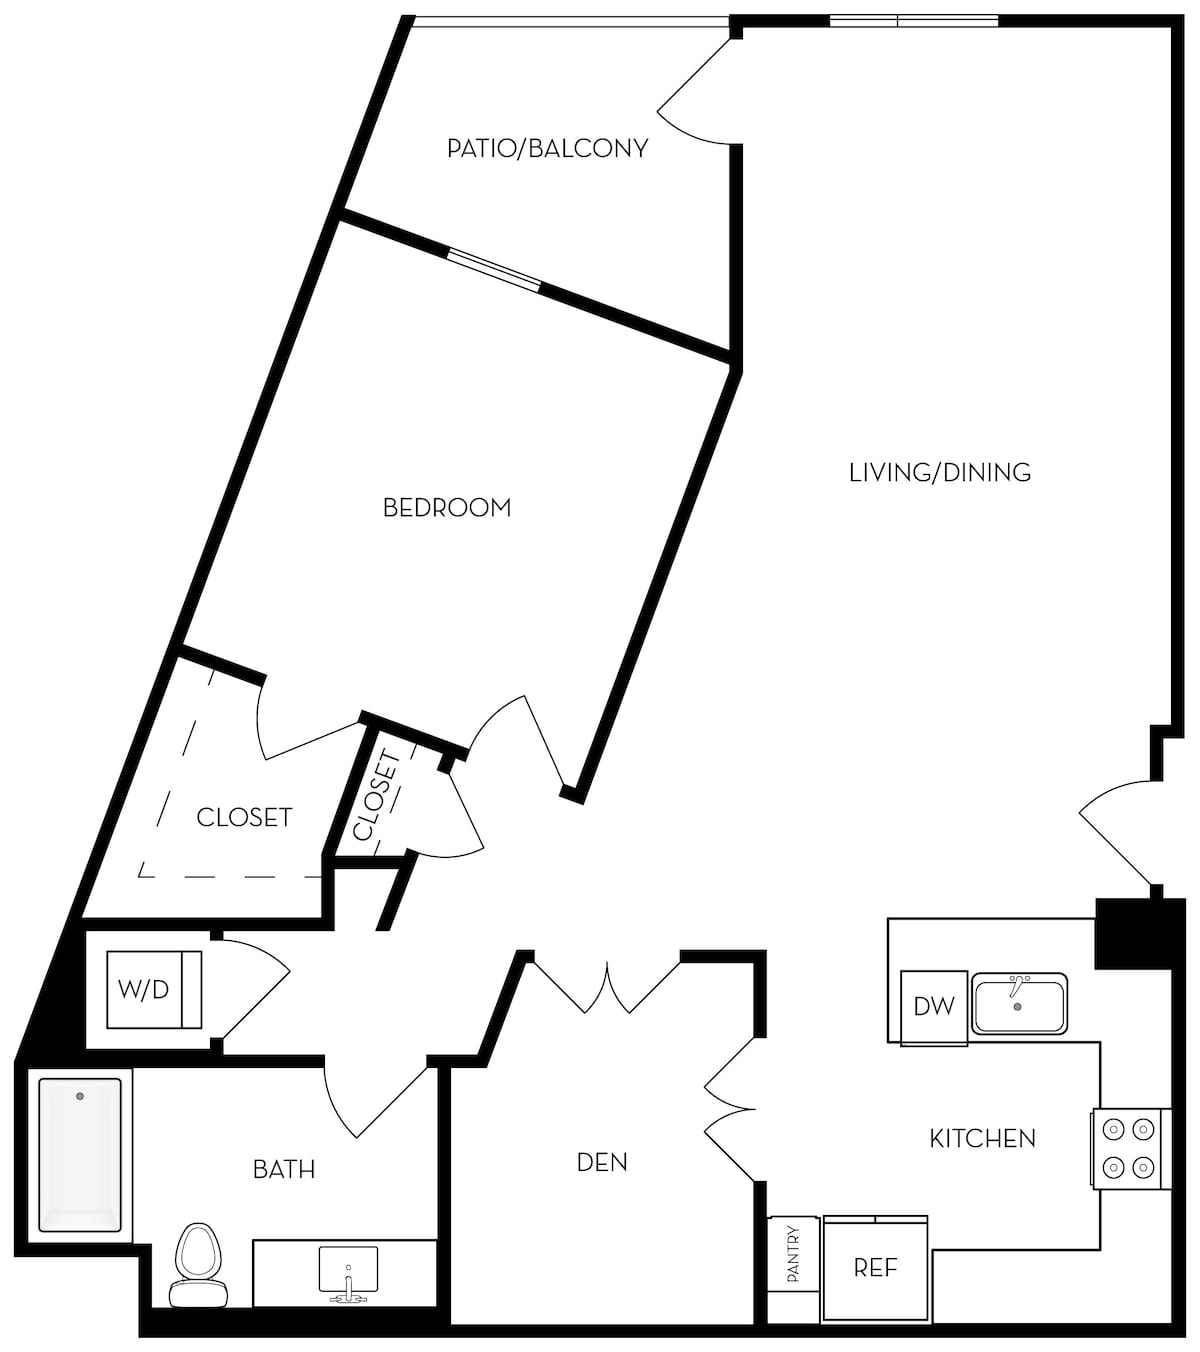 Floorplan diagram for A5d - 1BR 1BA Flat + Den, showing 1 bedroom